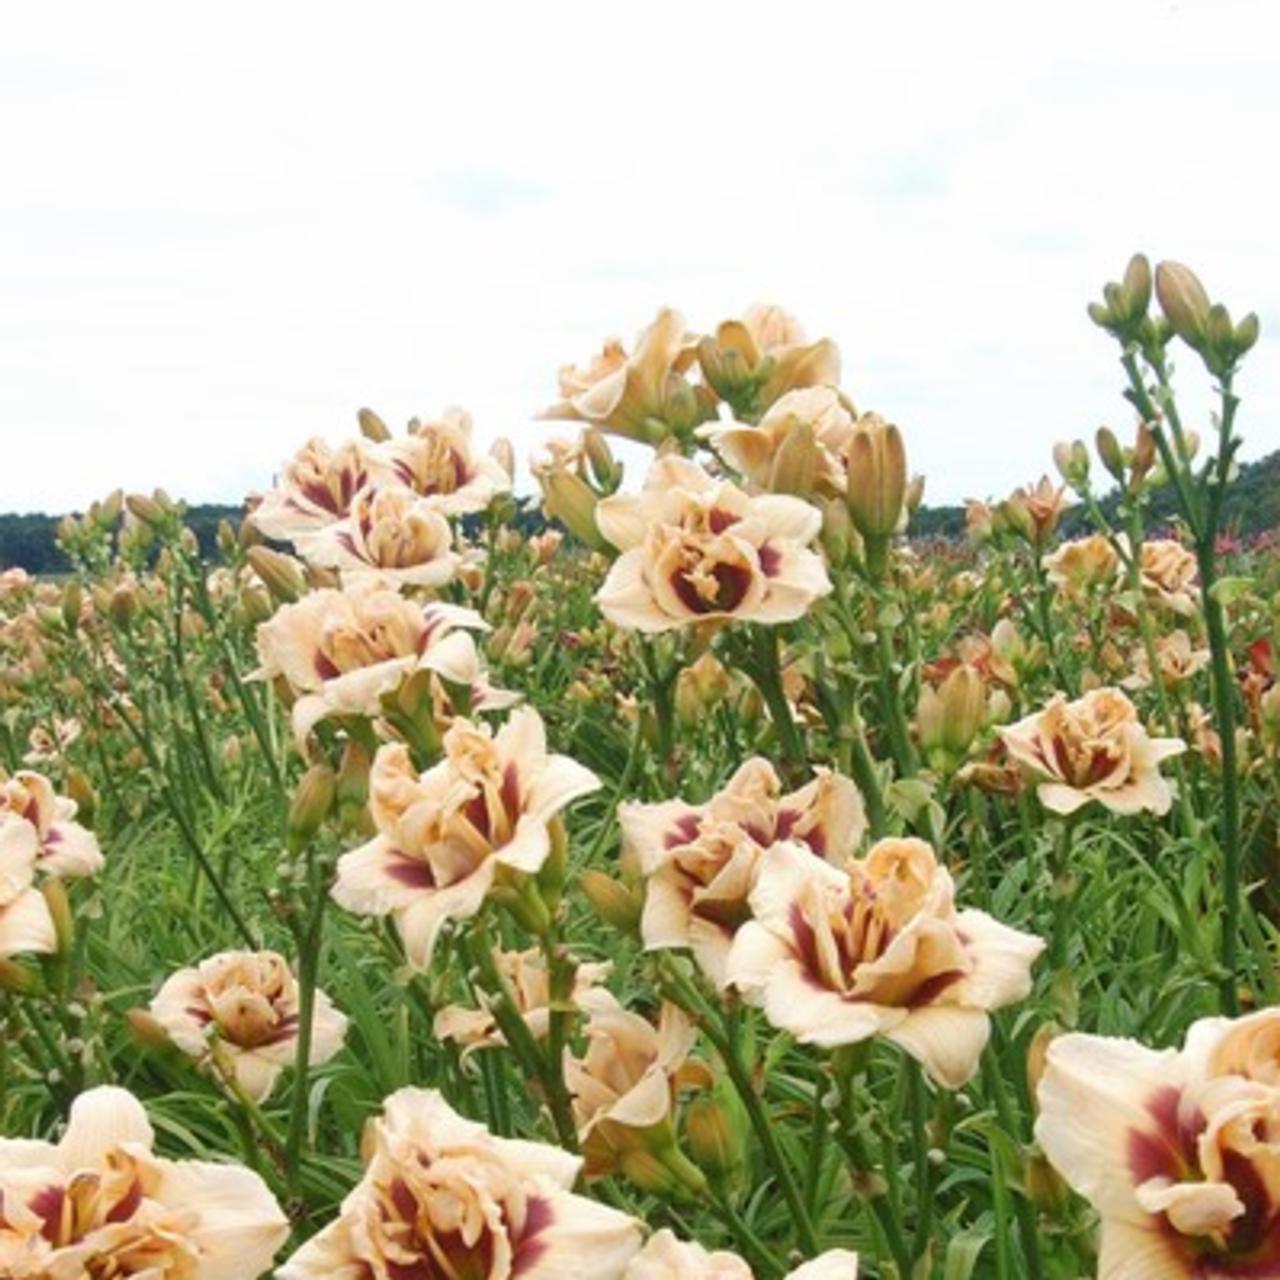 Hemerocallis 'Roswitha' plant